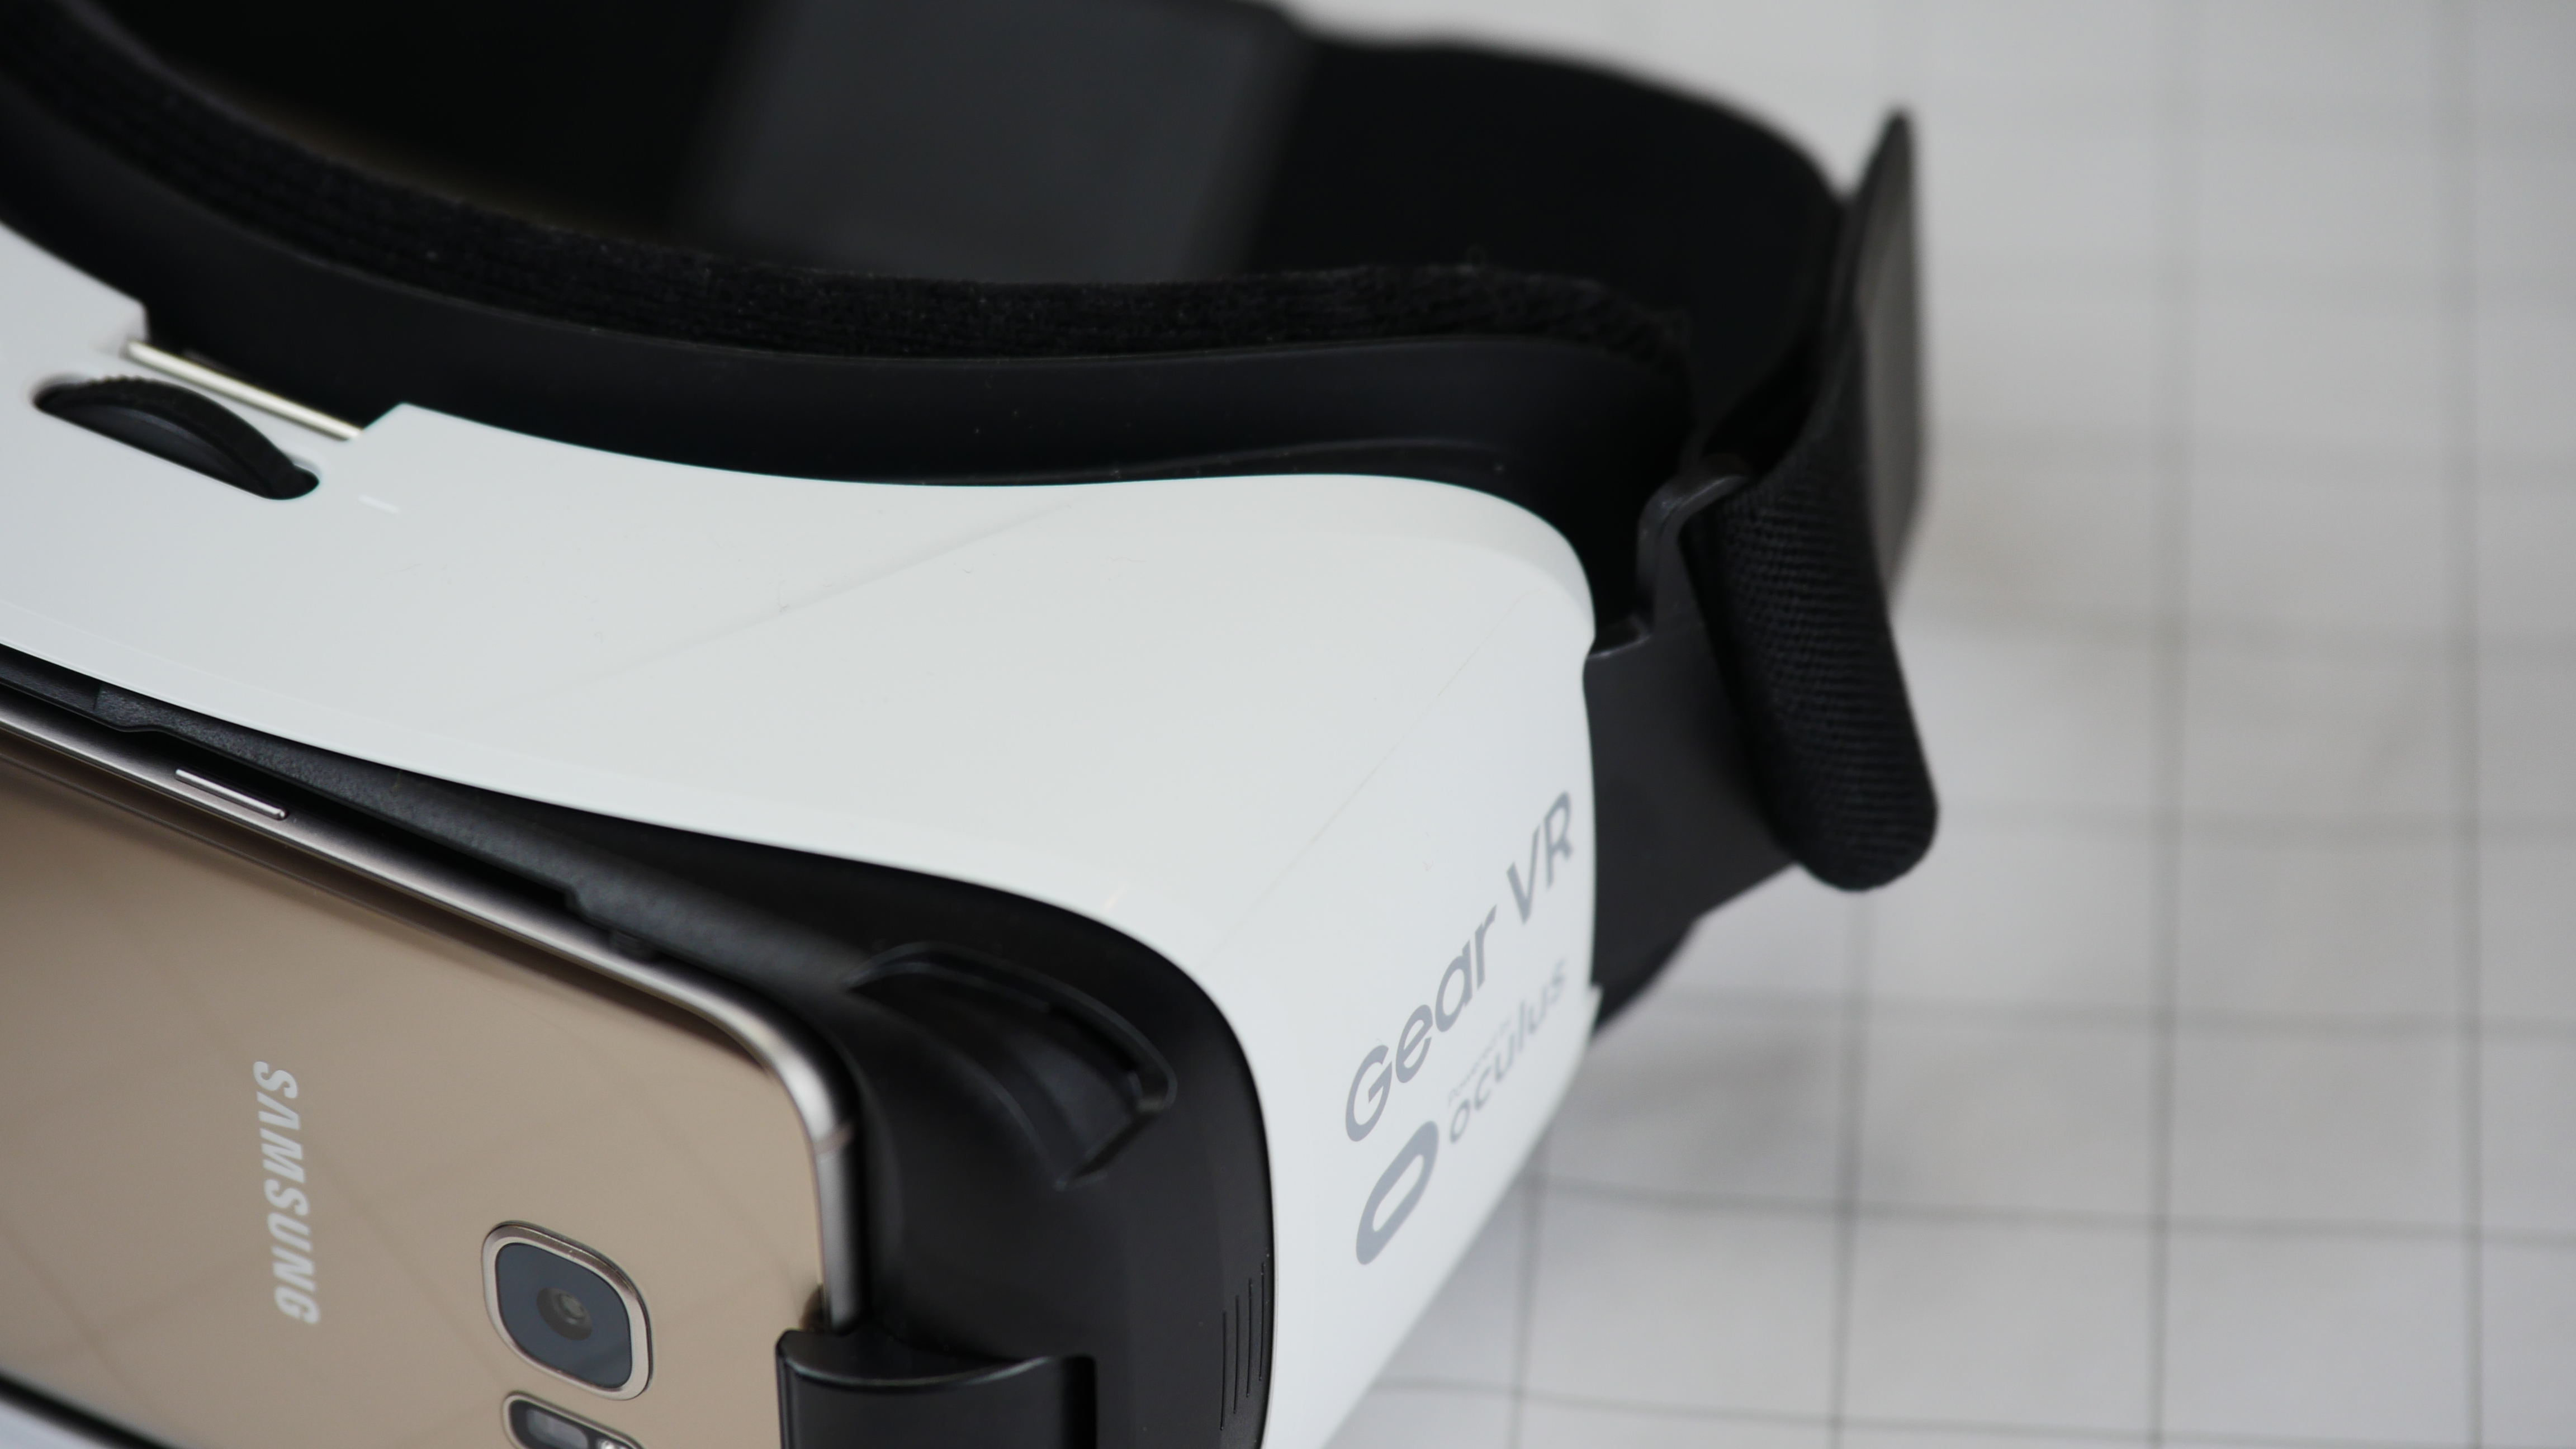 Galaxy S7 и очки Gear VR делают виртуальную реальность невероятно доступной - заключение